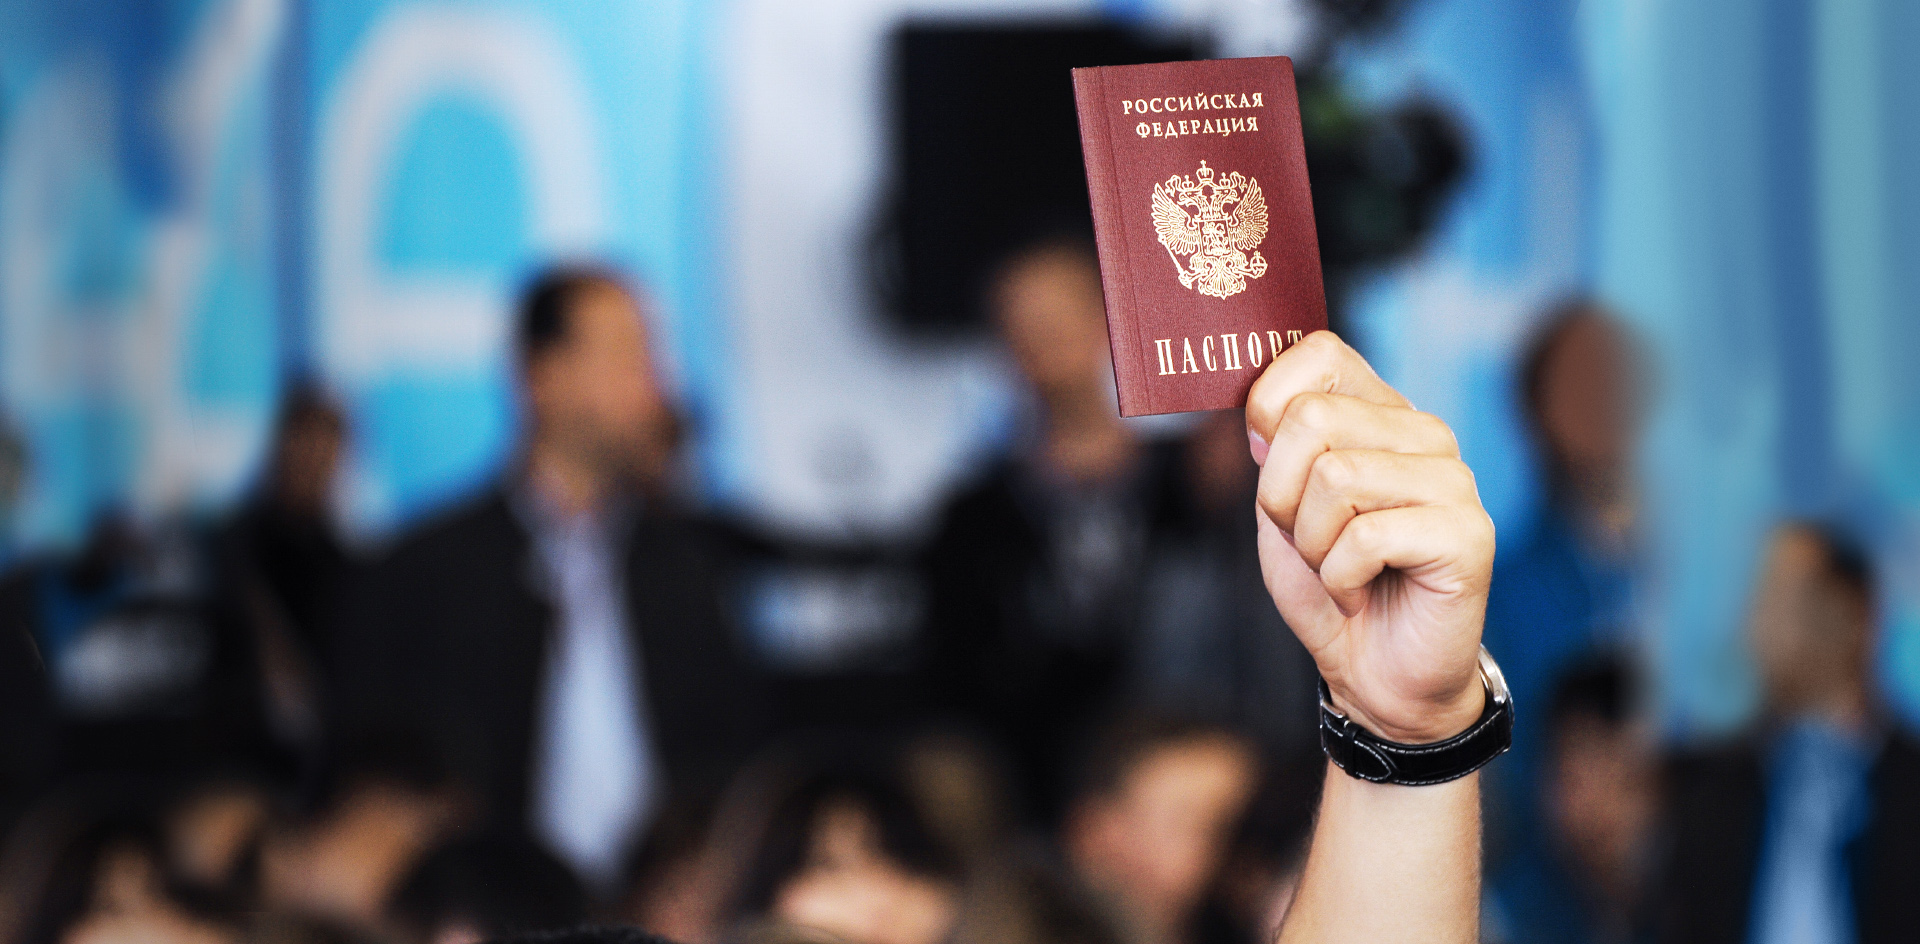 Получение гражданства РФ переведут на «упрощёнку»